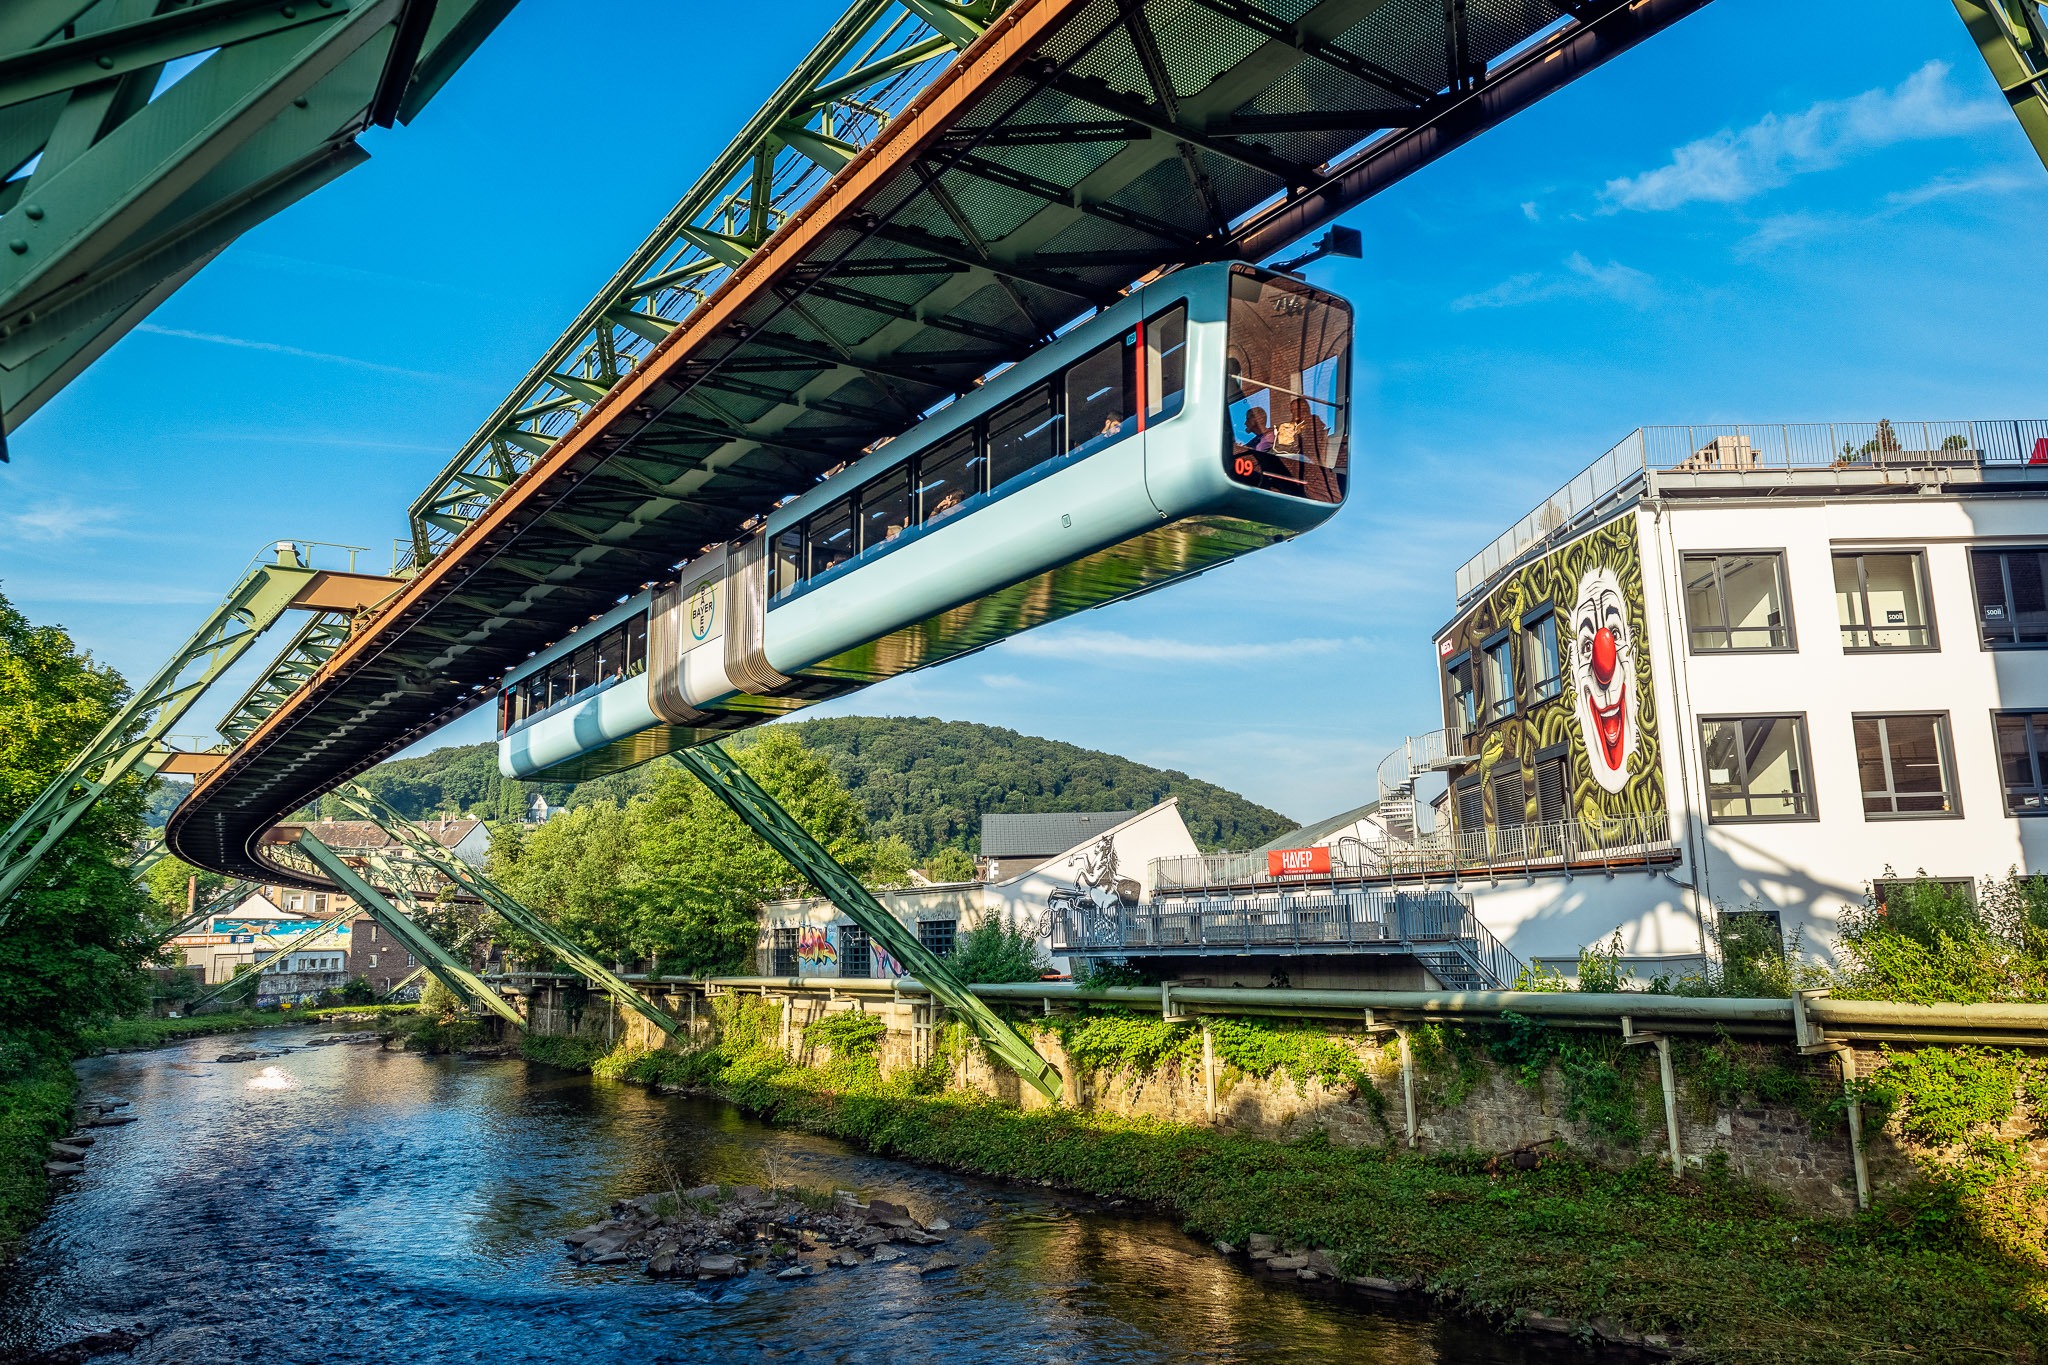 Hoàn thành năm 1901, tuyến tàu điện treo ngược dài hơn 120 năm tuổi này là xương sống của mạng lưới giao thông TP. Wuppertal, Đức.